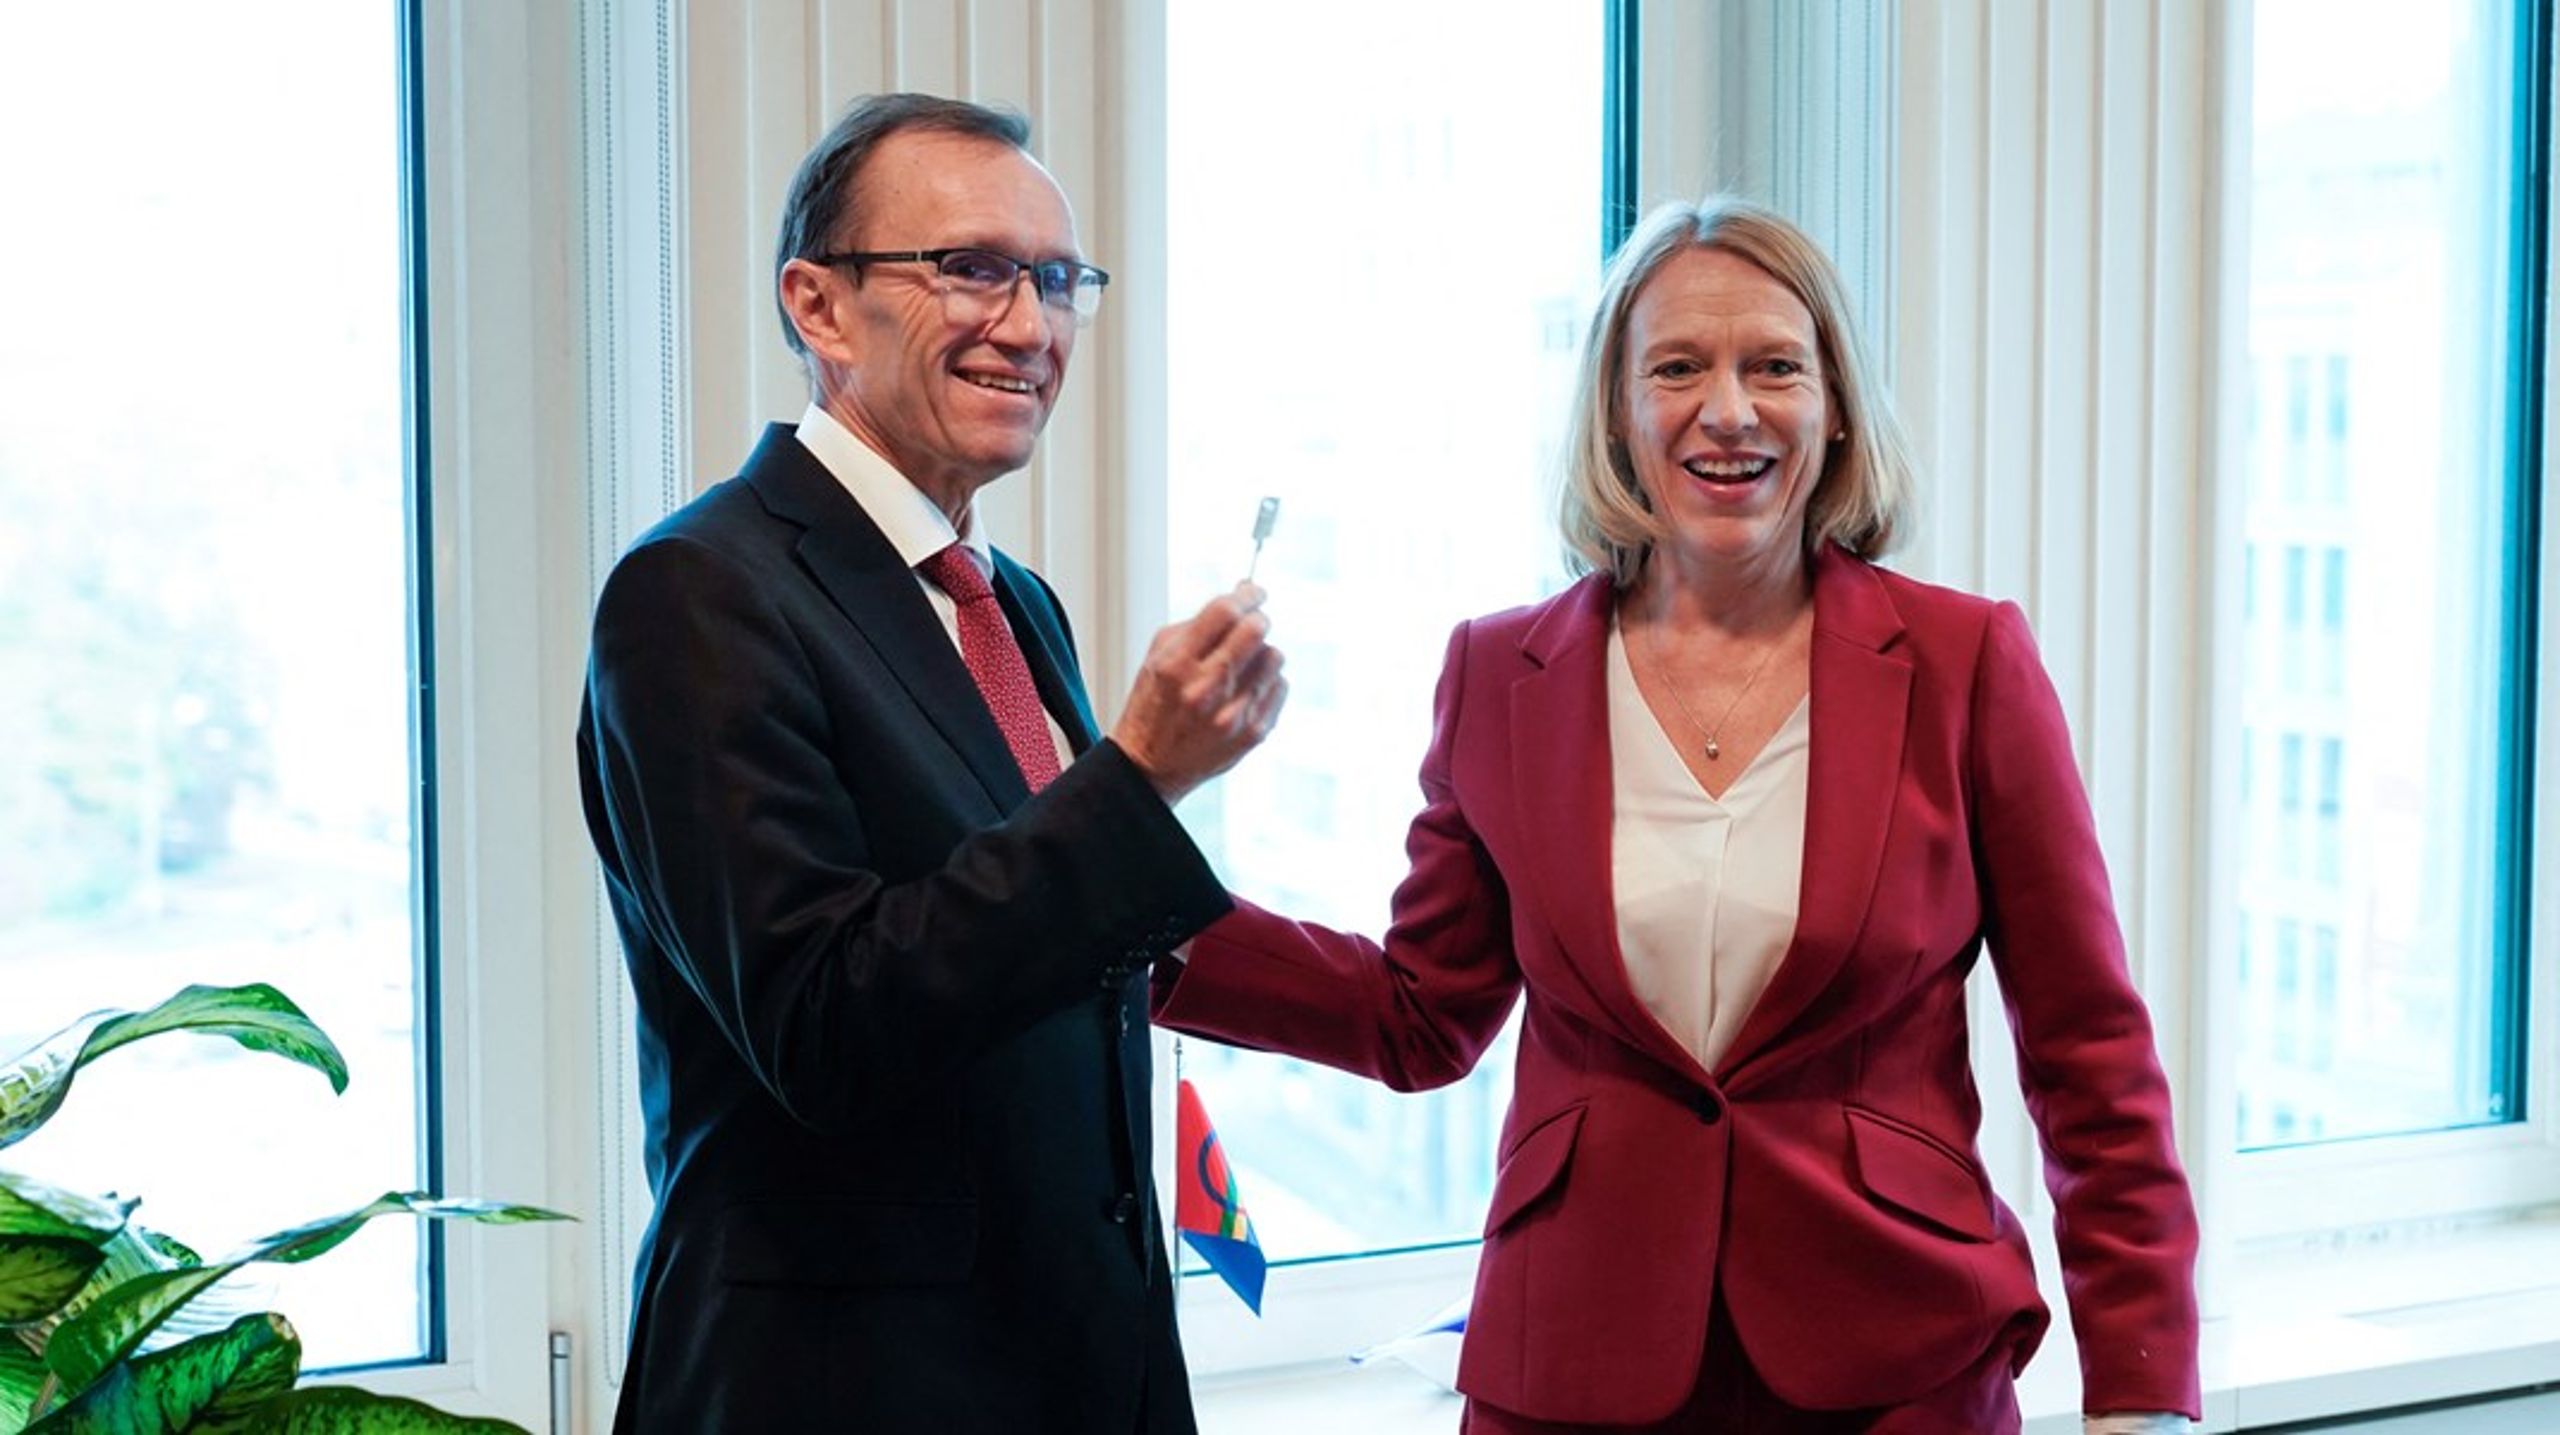 Den norske statsminister har netop foretaget en ministerrokade. Espen Barth Eide overtager posten som udenrigsminister fra Anniken Huitfeldt.